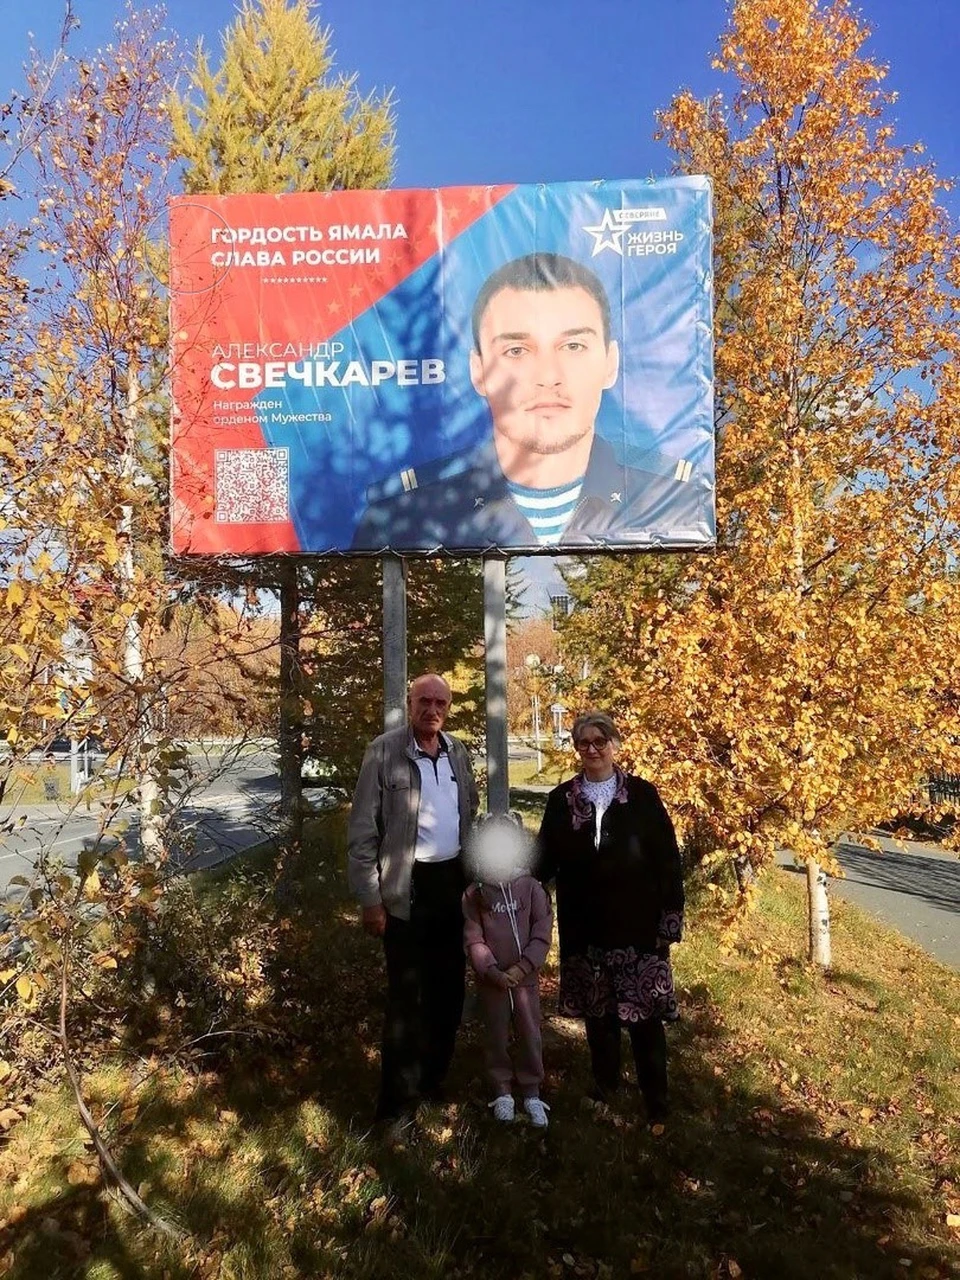 Фото: «Защитники Отечества» на Ямале